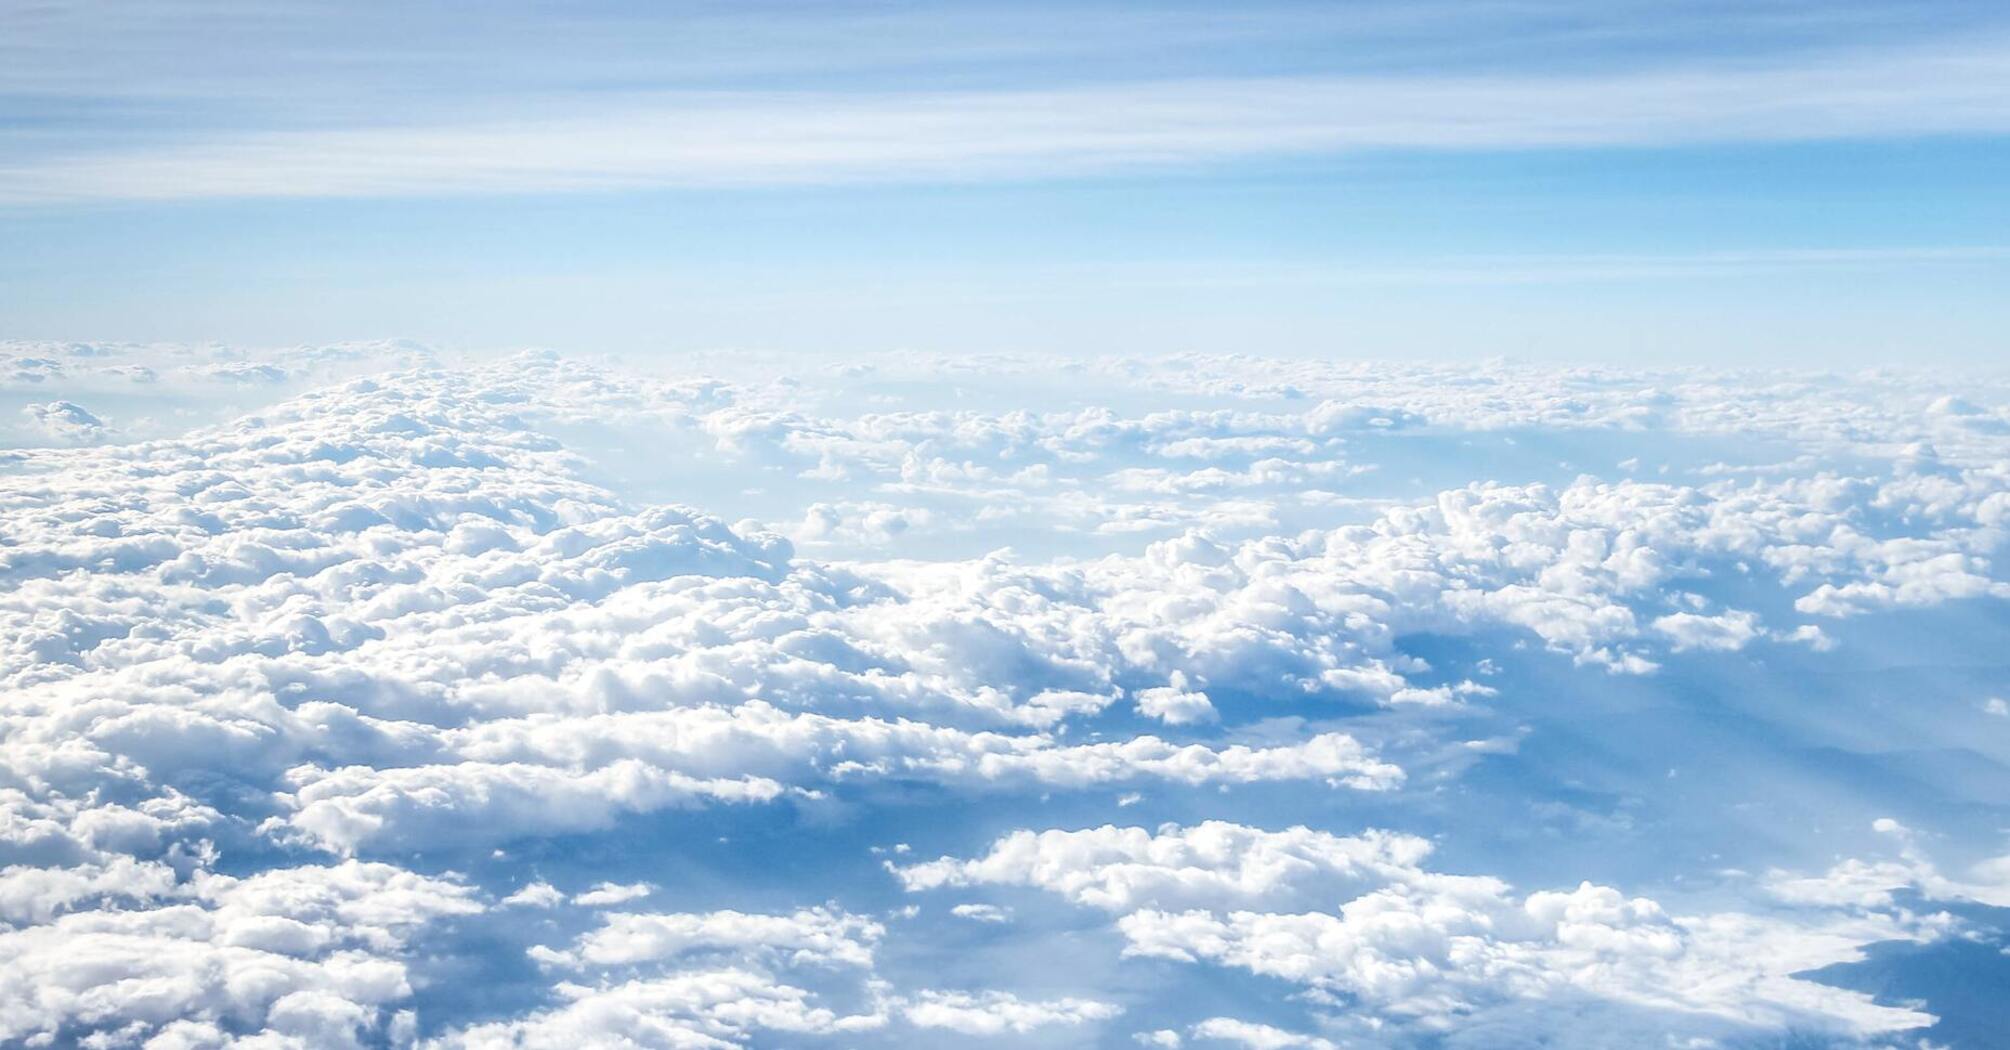 Ученые объяснили, почему облака 'плавают' в небе